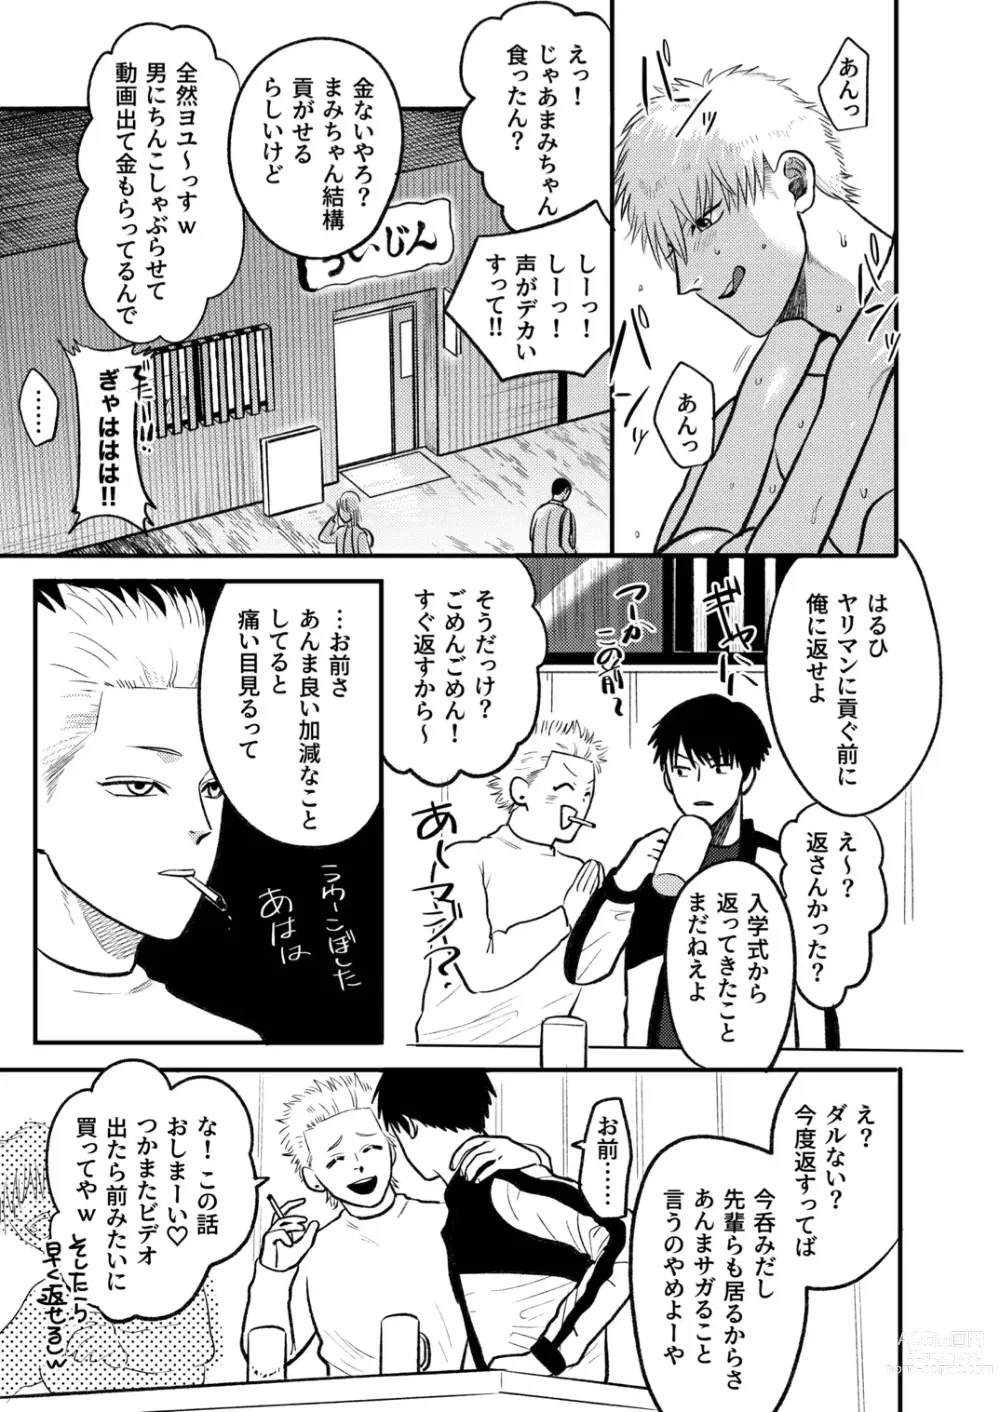 Page 8 of doujinshi Kashikoi Okane no Kasegikata